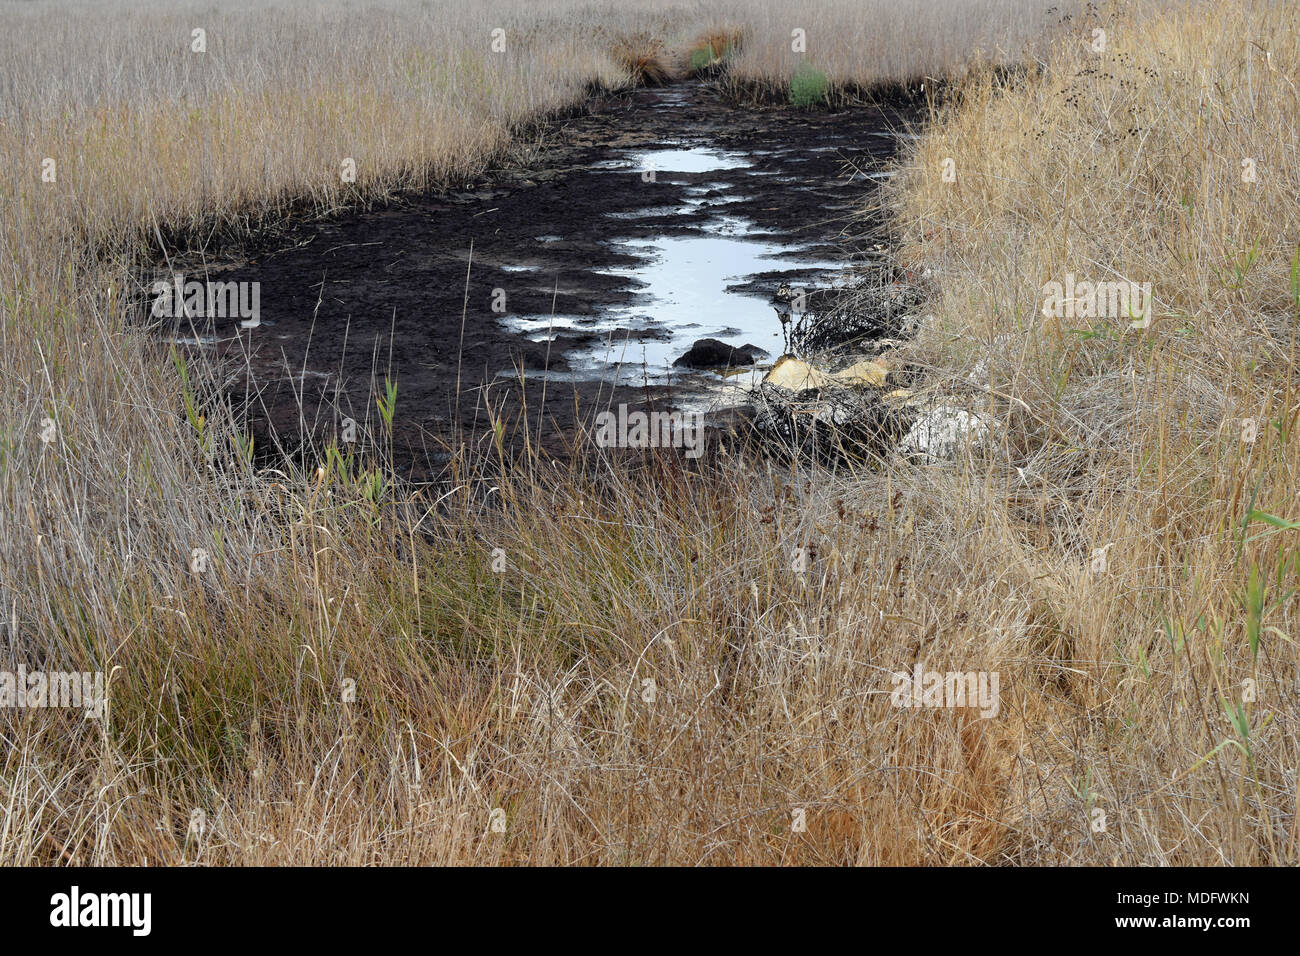 Asfalto naturale pit in una palude a Zante, Grecia. Tar molle di acqua nella zona sono stati menzionati da antico storico traveler Erodoto. Foto Stock